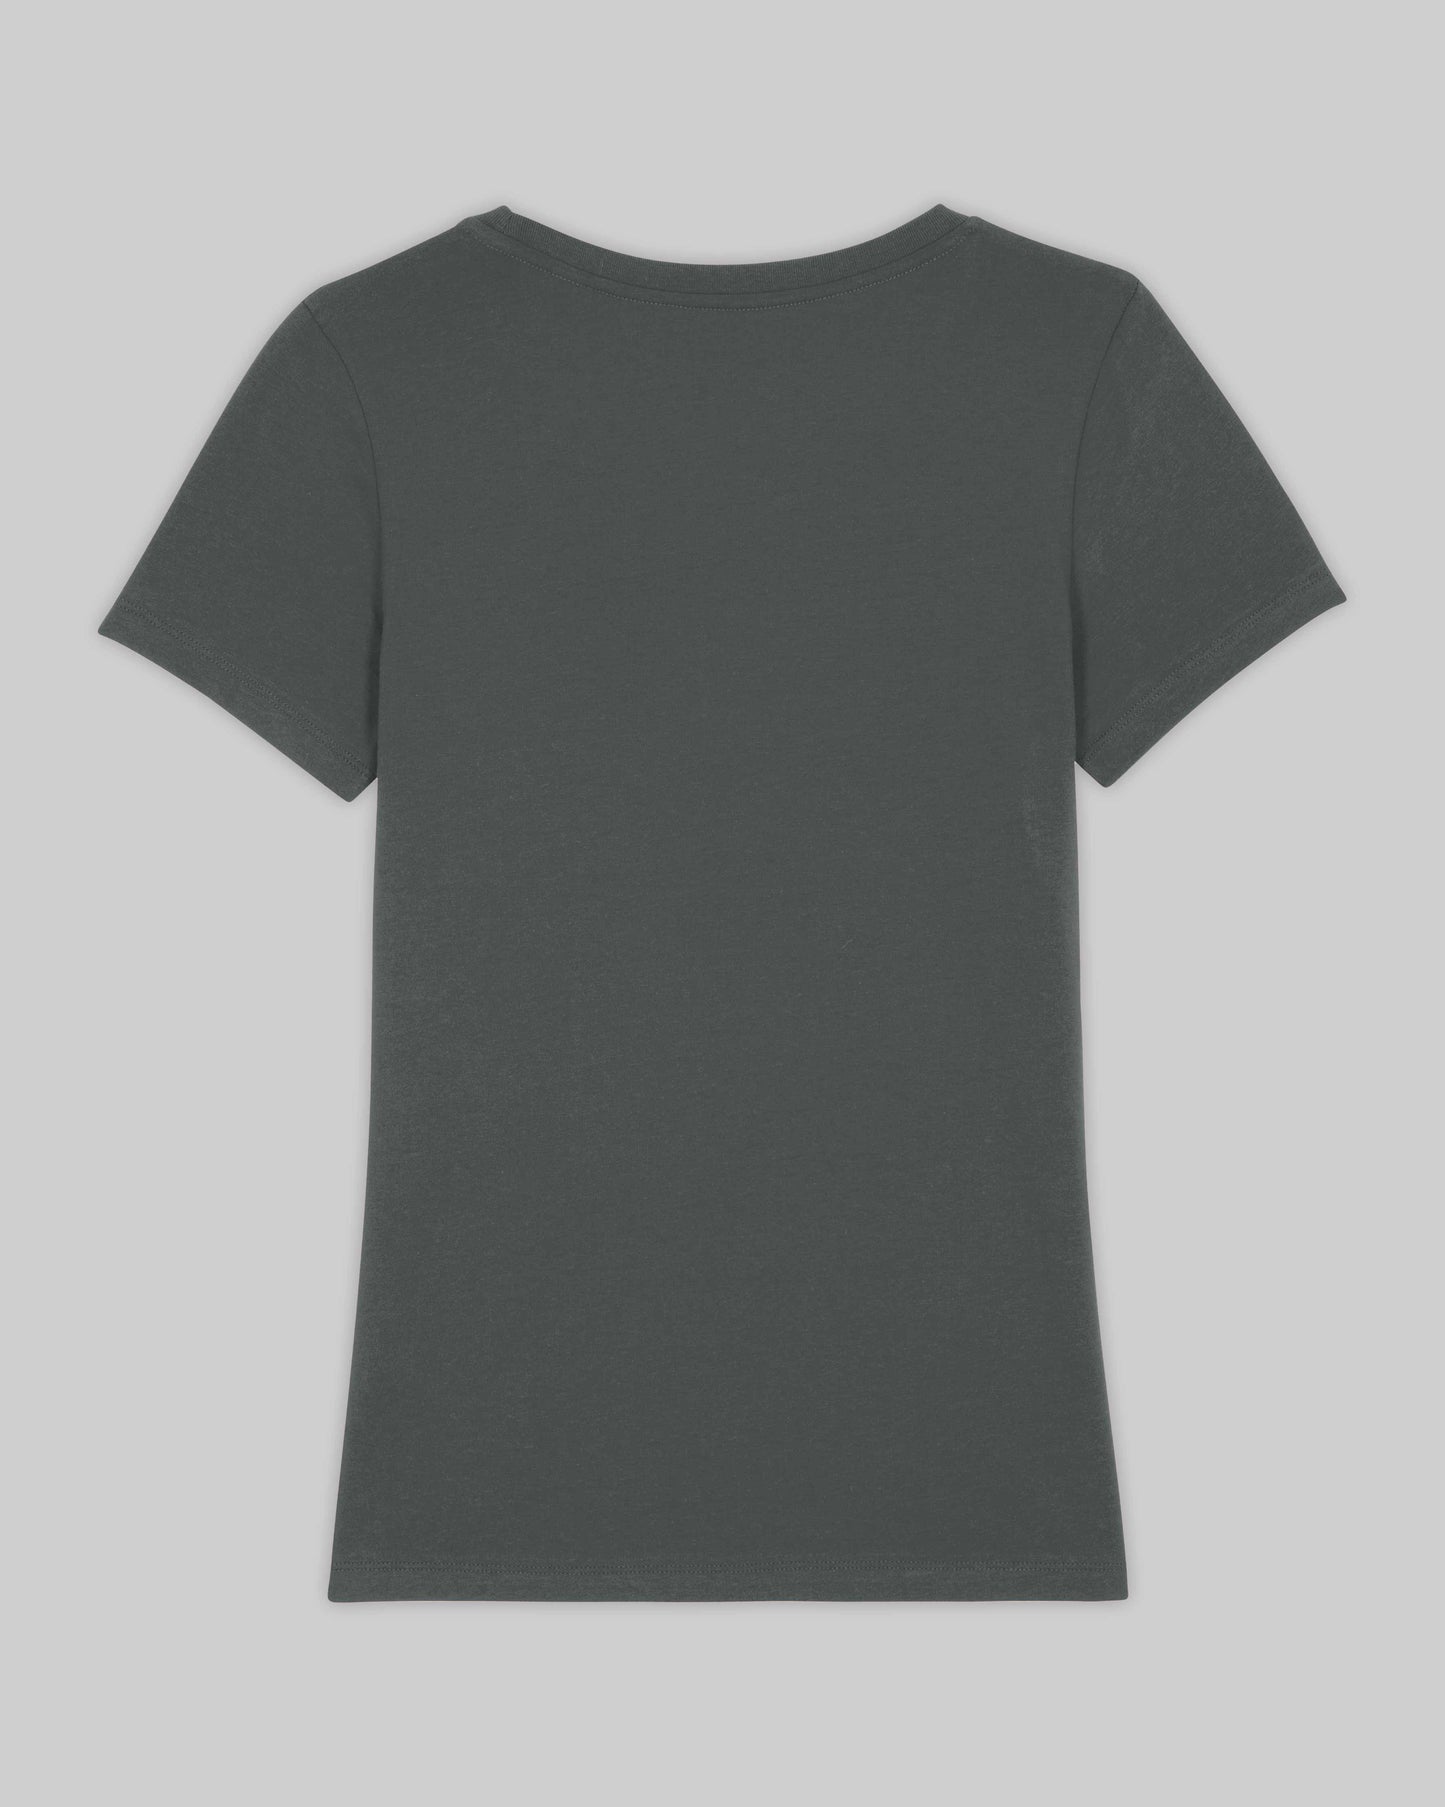 EINHORST® Organic Shirt tailliert in "Anthracite" mit dem Motiv "proud Regenbogen" in der Kombination weißer Regenbogen mit weißer Schrift, Bild von Shirt von hinten